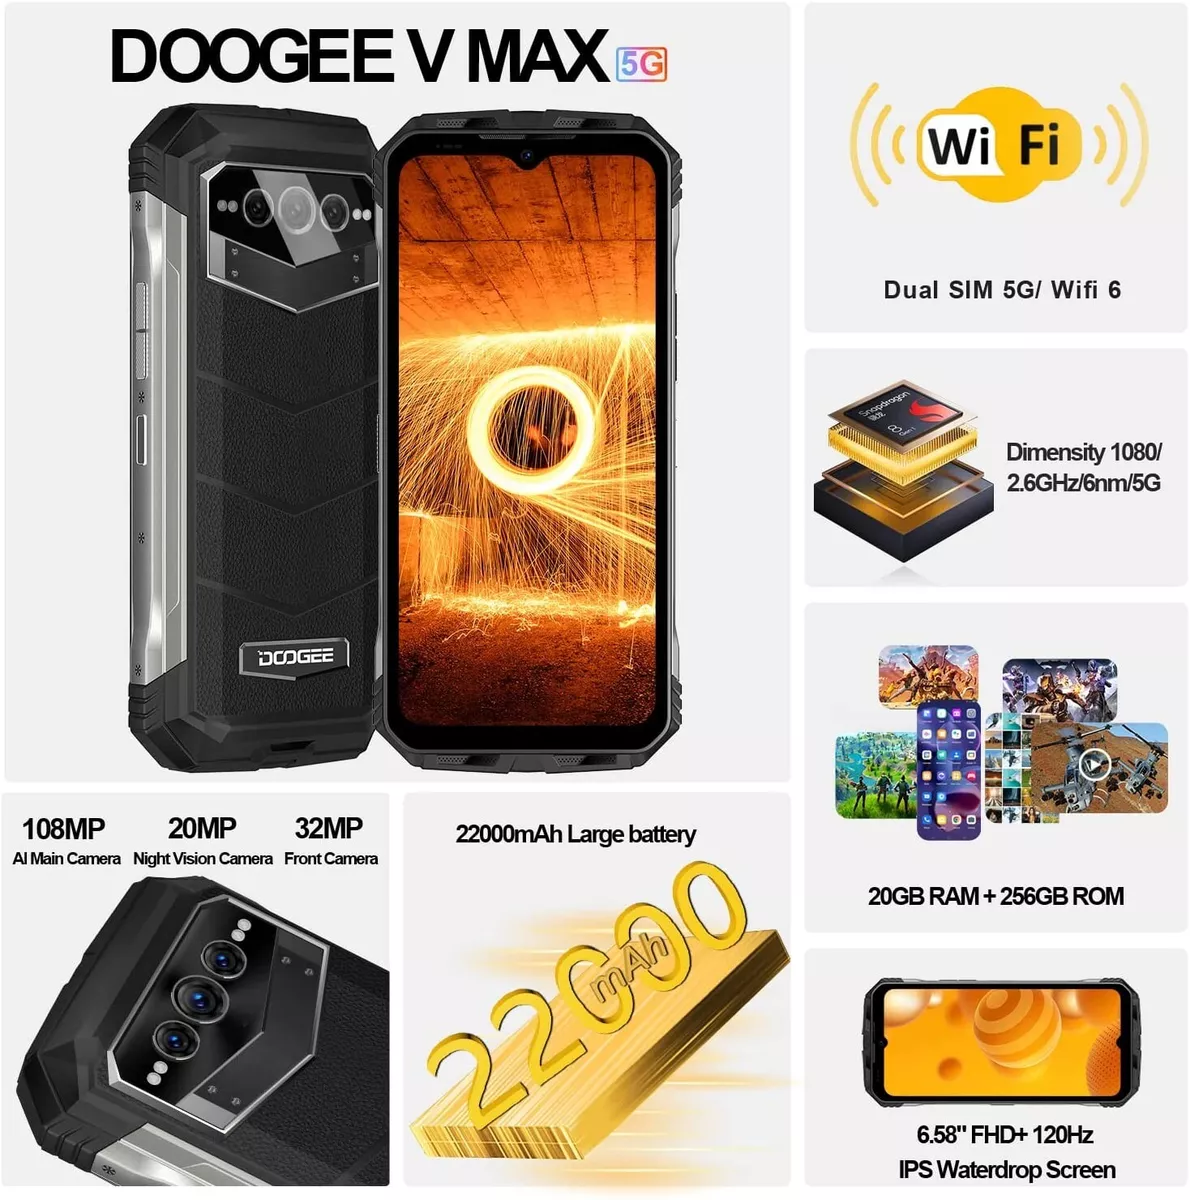 DOOGEE Cell Phones - Unlocked 